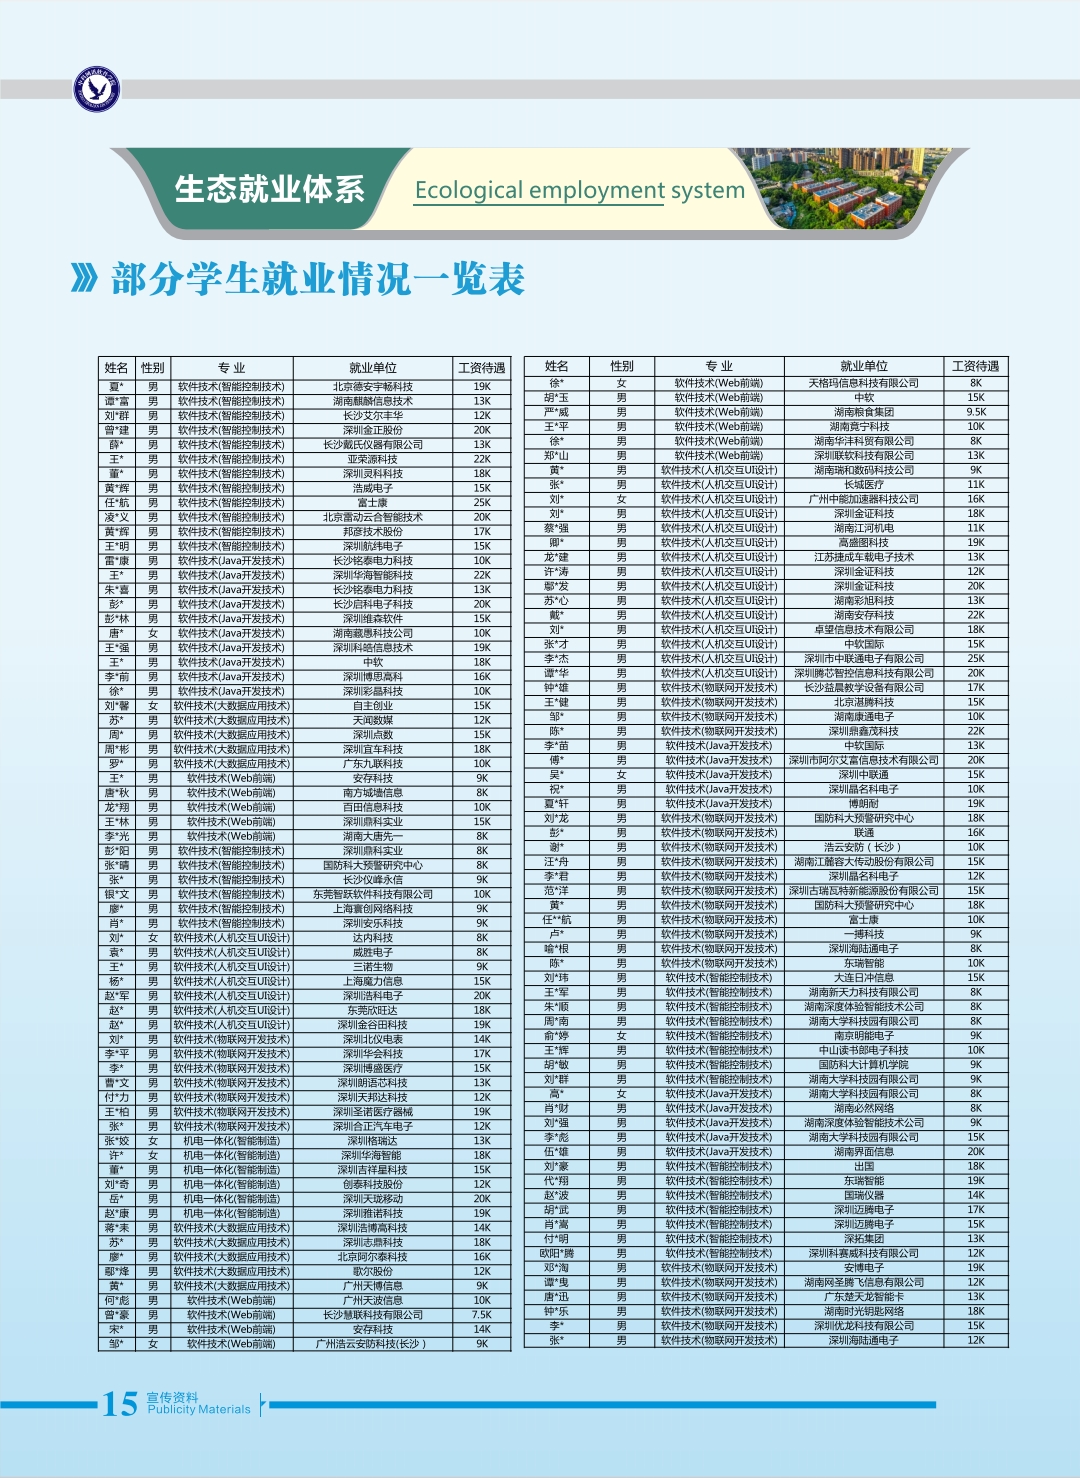 中科网讯软件学院20420(15).jpg